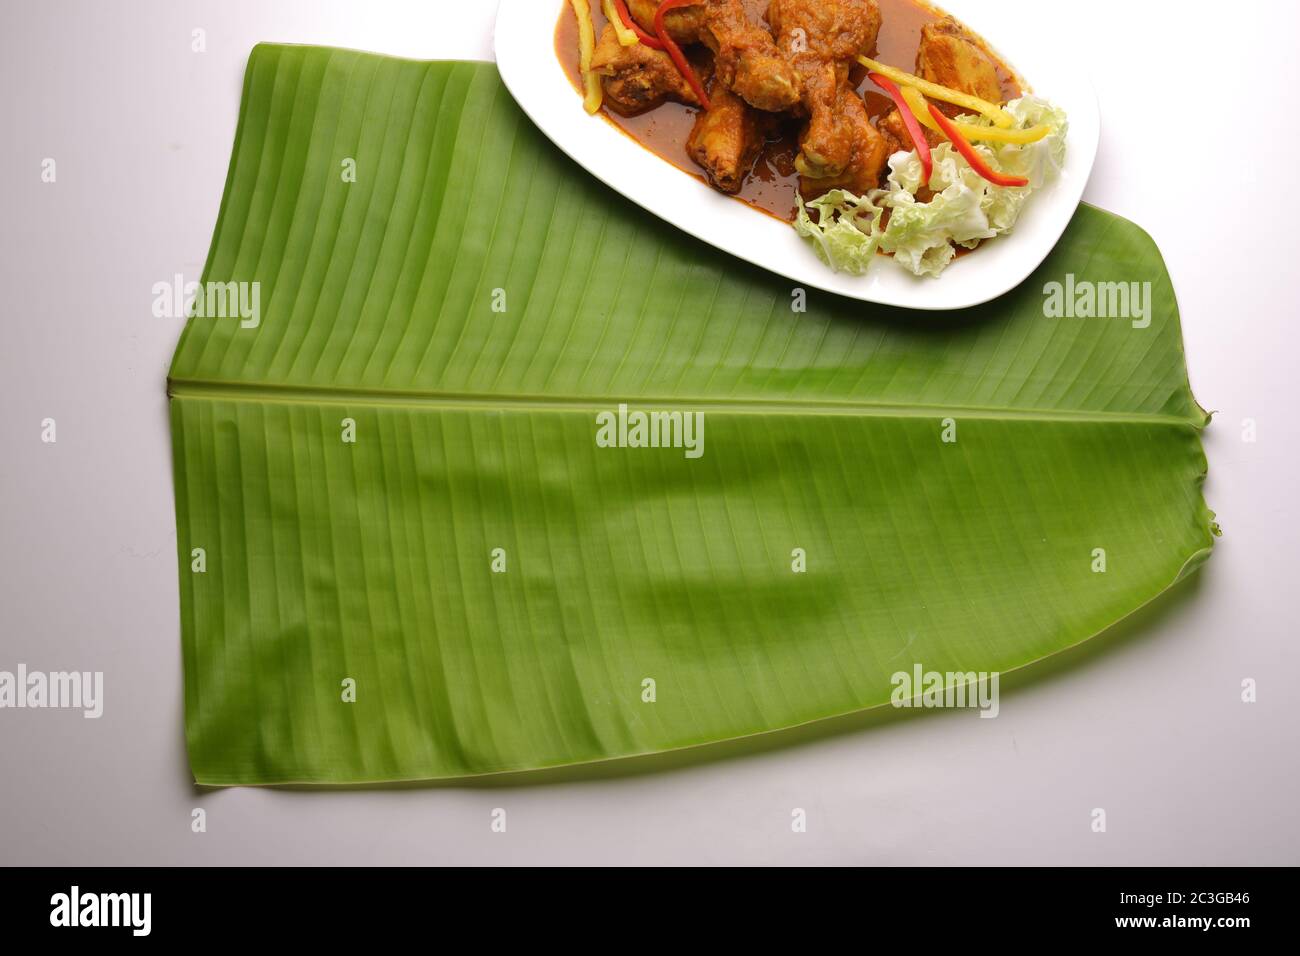 Foglia di banana , foglia di Kerala sadya, un piatto tradizionalmente utilizzato durante la festa e le feste, immagine isolata di foglia di banana verde fresco disposto su bianco Foto Stock